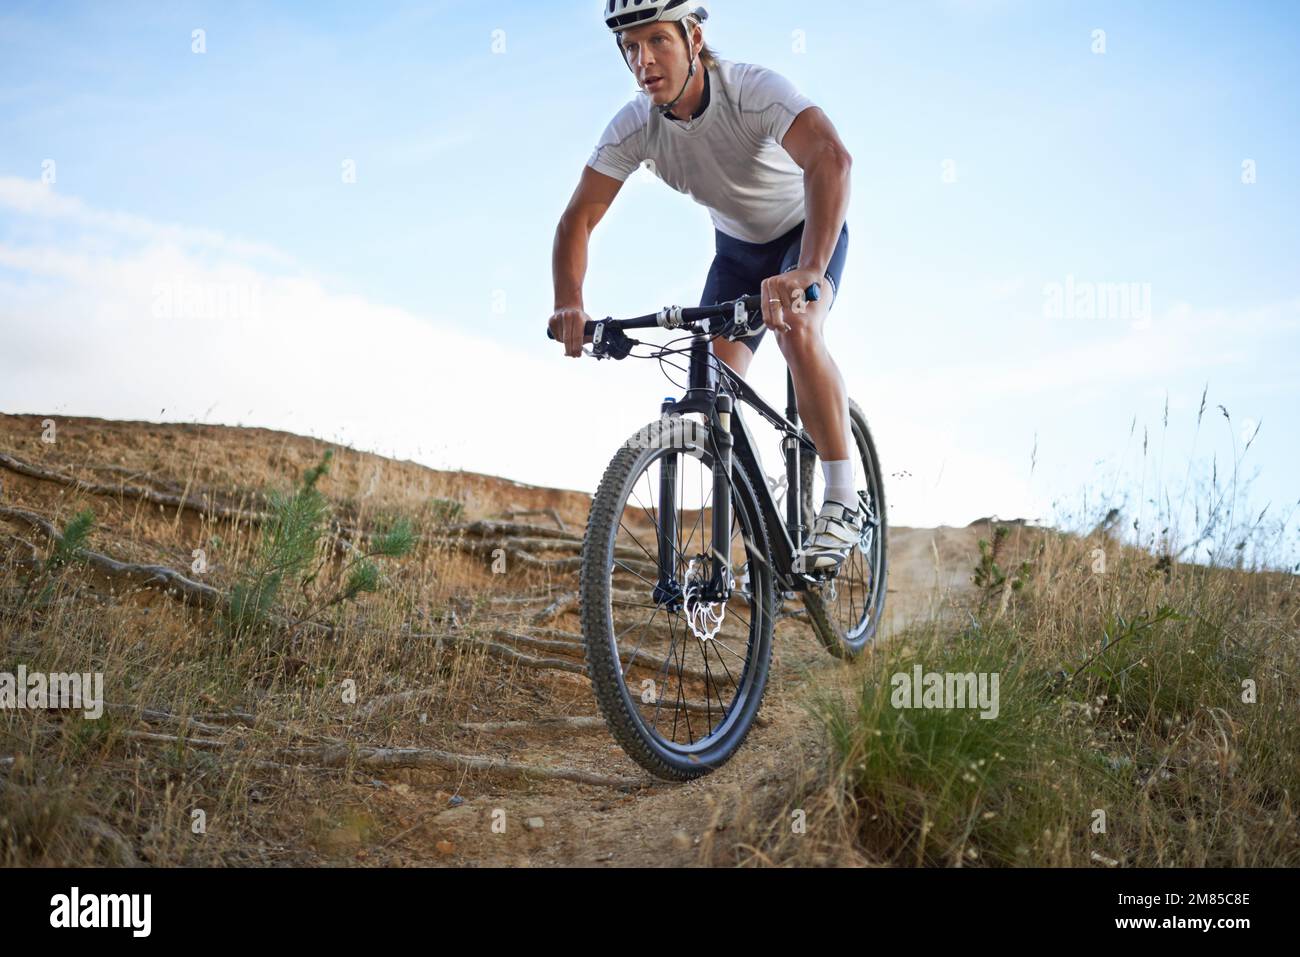 Nichts ist besser als eine extreme Fahrradtour. Fit Radfahrer fahren über unwegsames Gelände, während in der Natur. Stockfoto